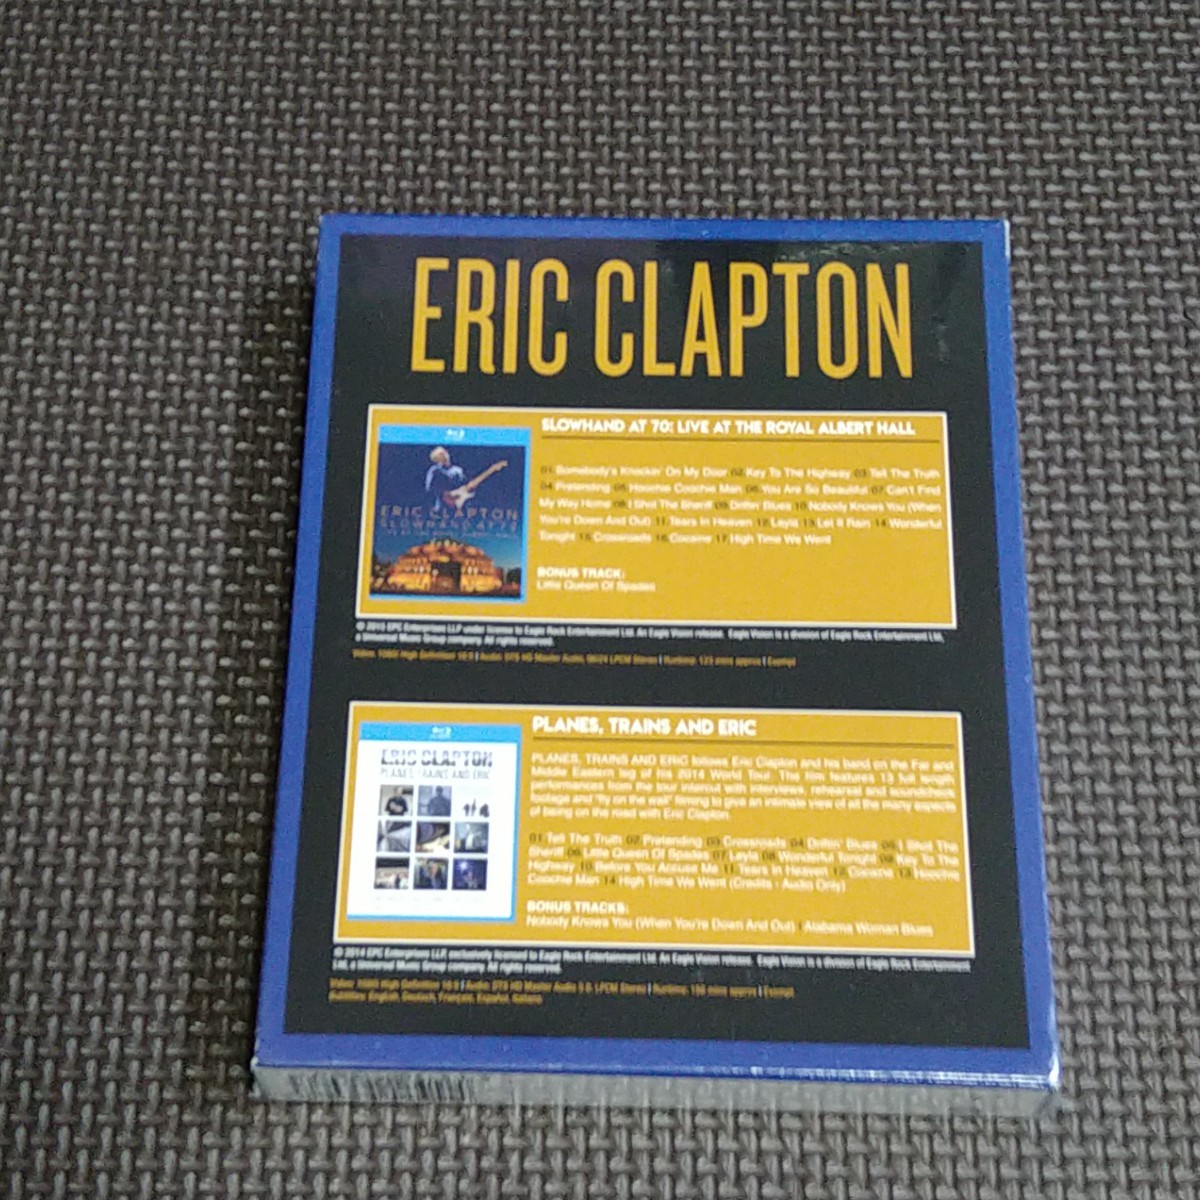 新品 即決 エリック・クラプトン Eric Clapton Slowhand at 70 Live at the Royal Albert Hall Planes, Trains and Ericの画像5